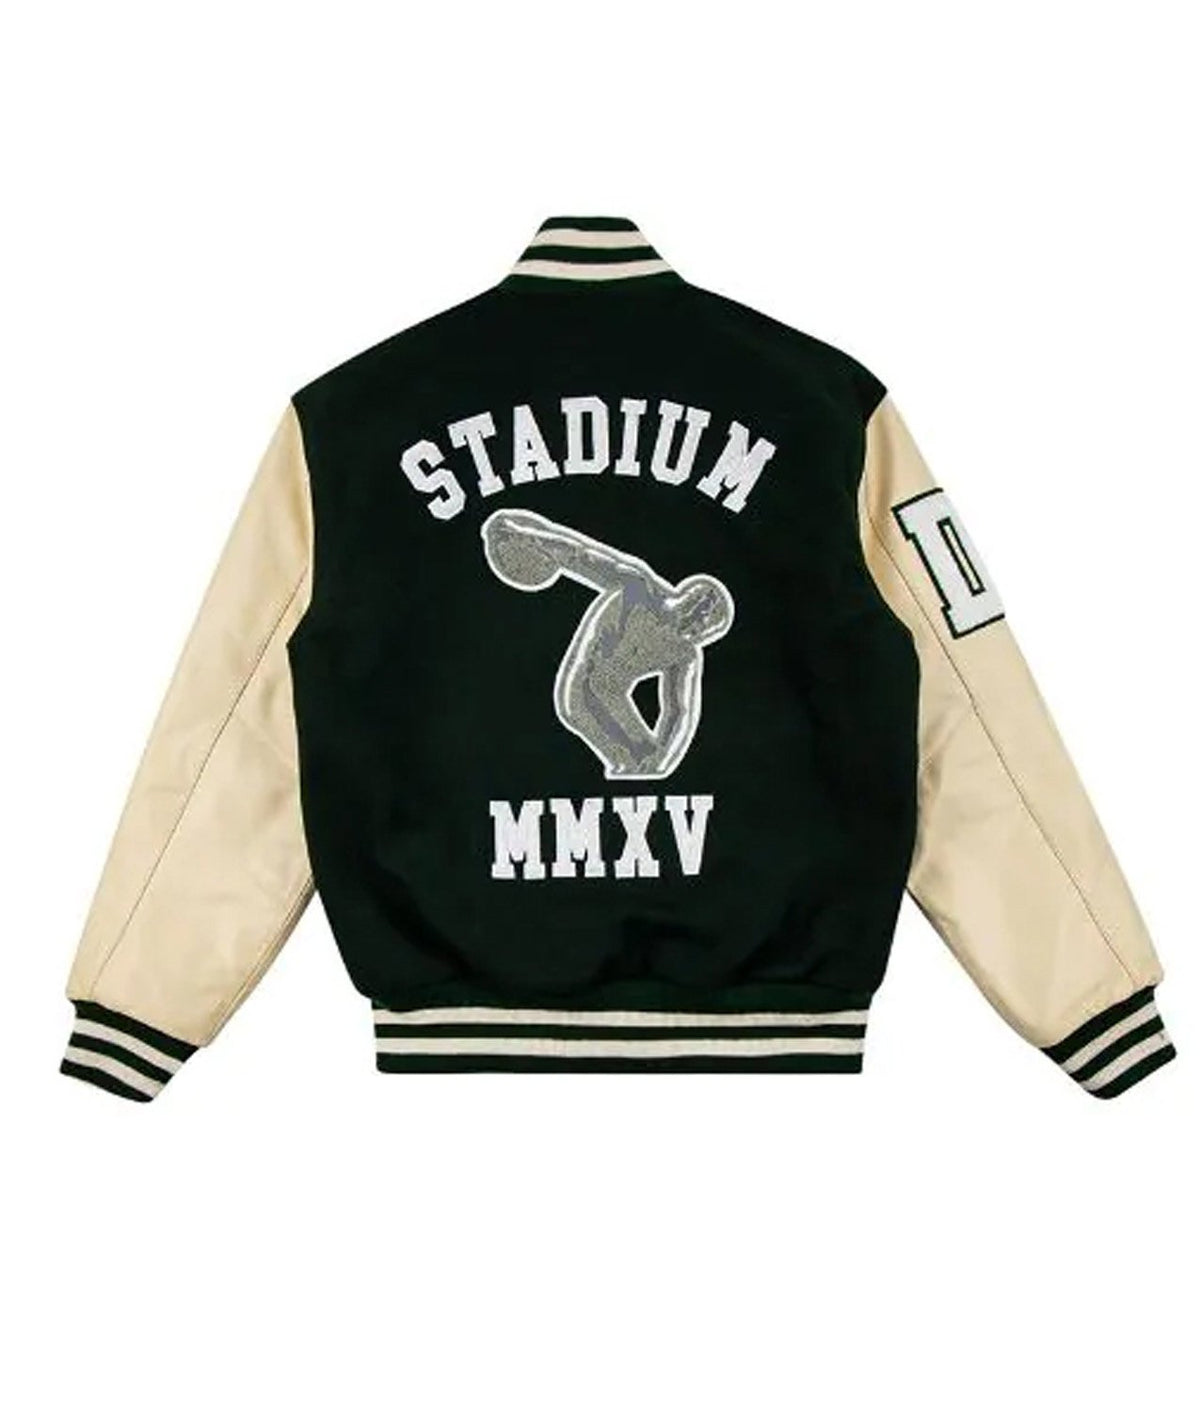 Stadium MMXV Varsity Jacket